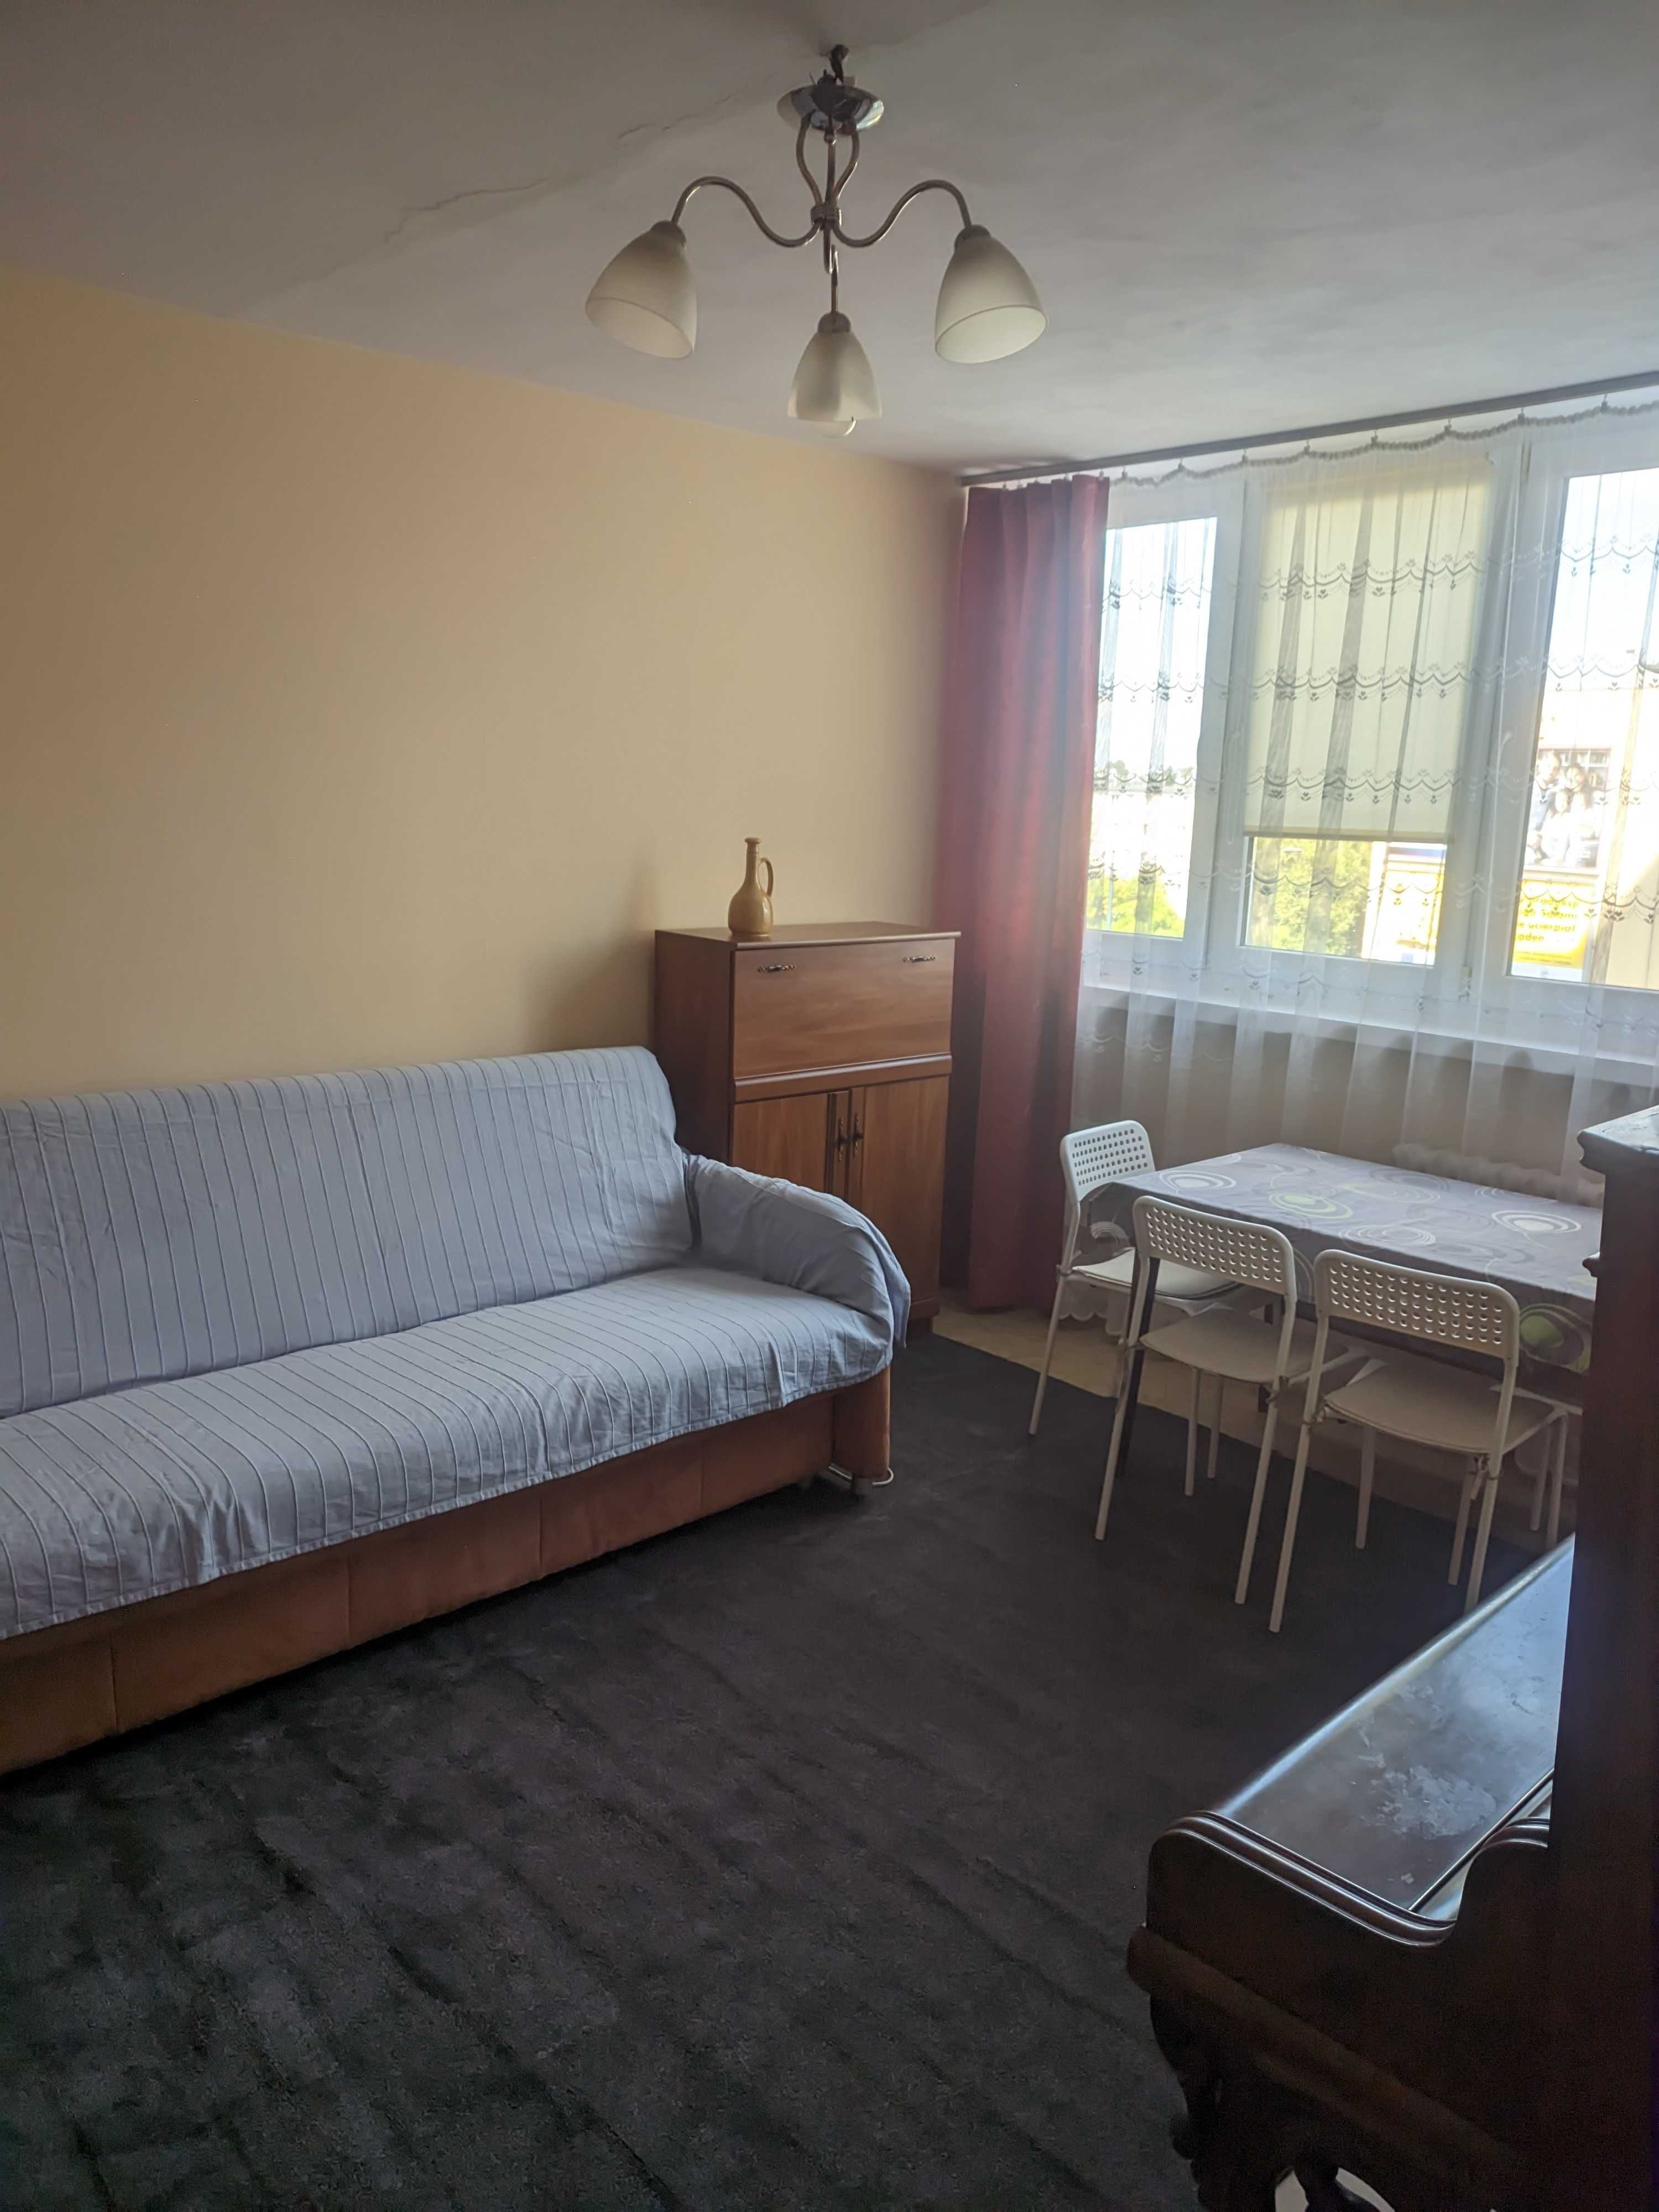 3-pokojowe mieszkanie umeblowane i wyposażone na Dąbrowie wynajmę,1400